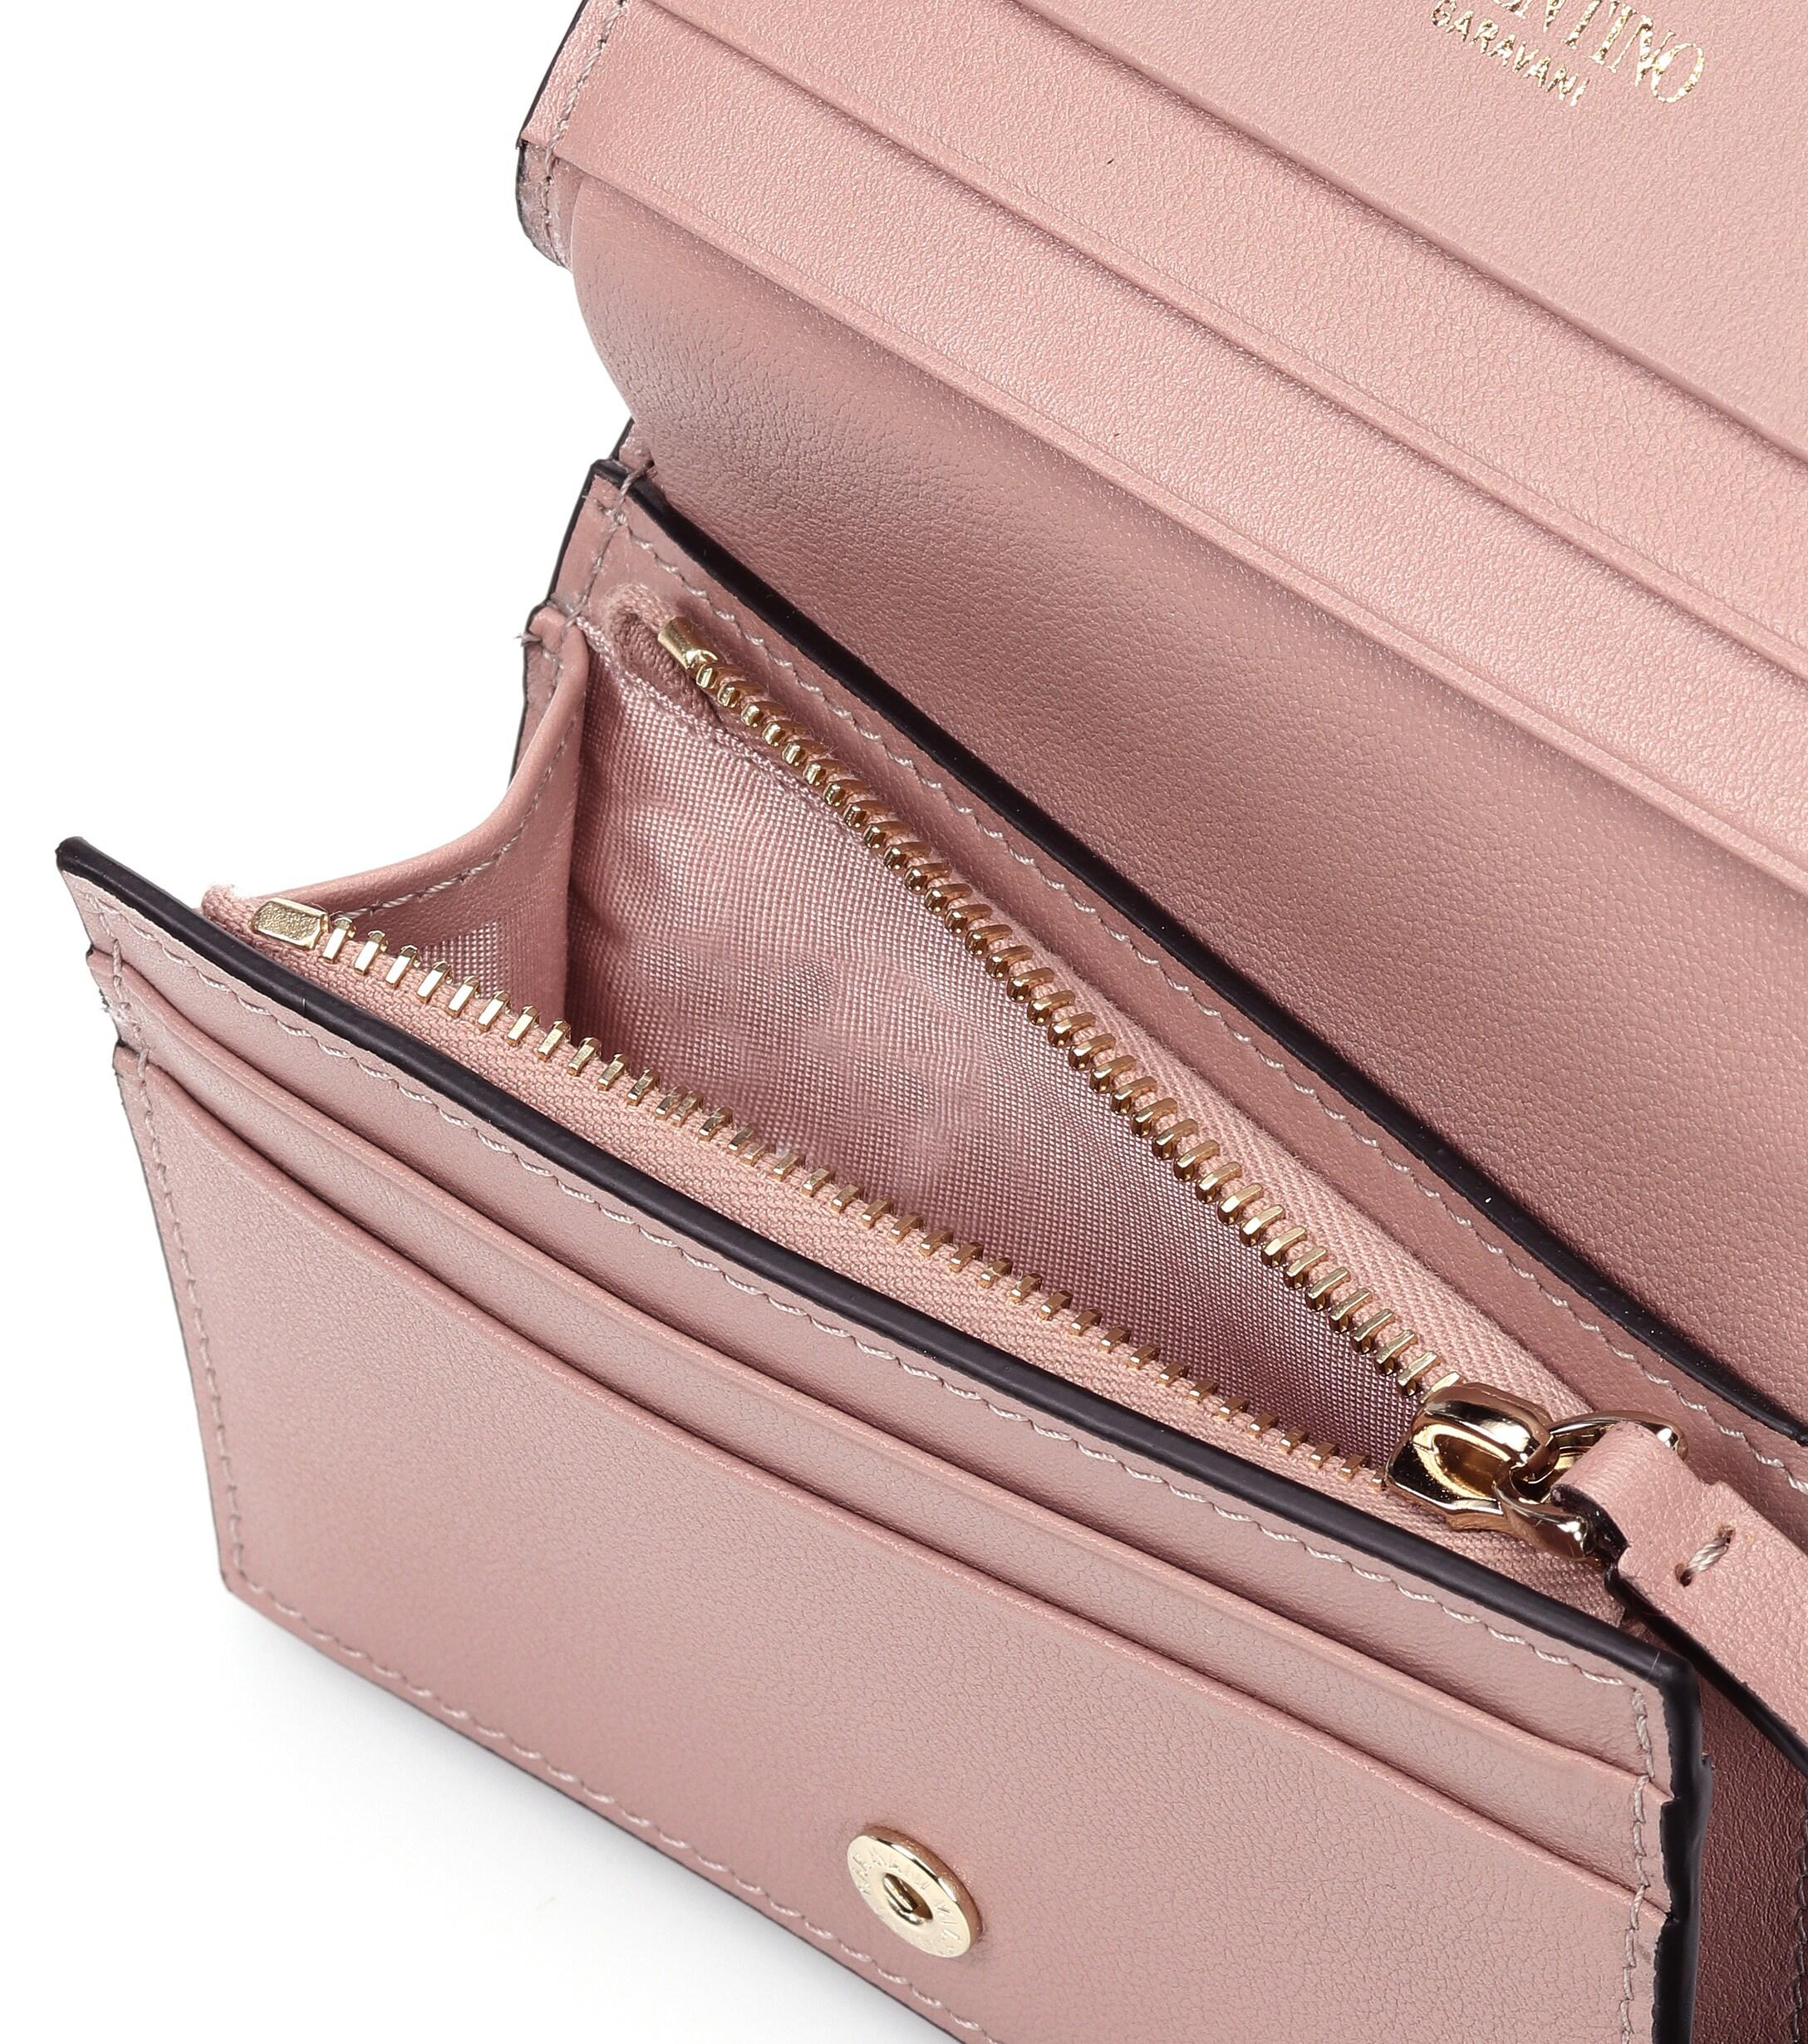 Valentino Garavani Rockstud Leather Wallet in Powder Pink (Pink) - Lyst